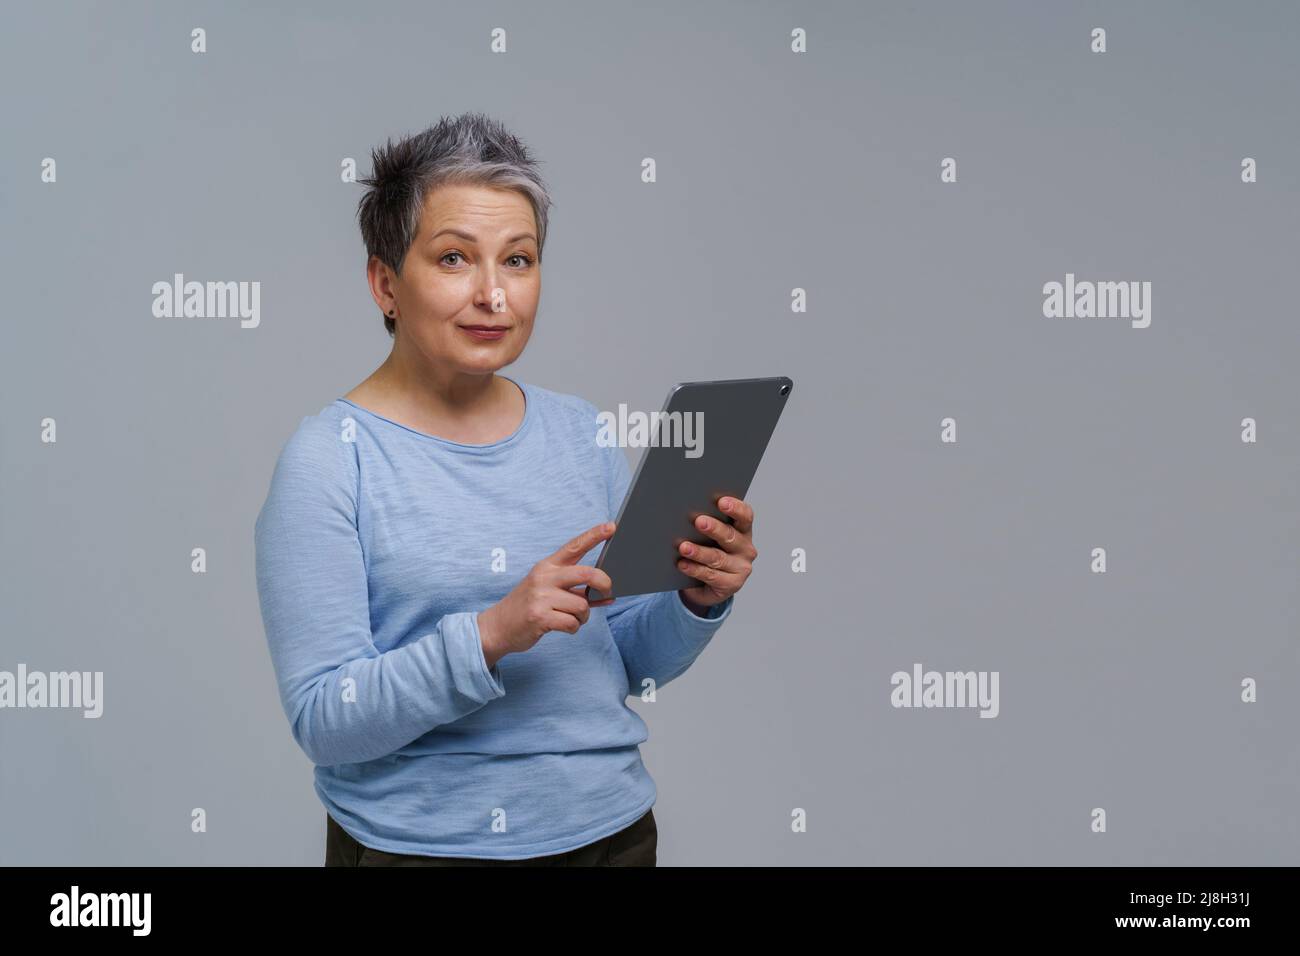 Meravigliosa donna matura 50s capelli grigi con tablet digitale che funziona o controlla sui social media. Bella donna in blusa blu isolato su bianco. Persone anziane e tecnologie. Immagine a toni. Foto Stock